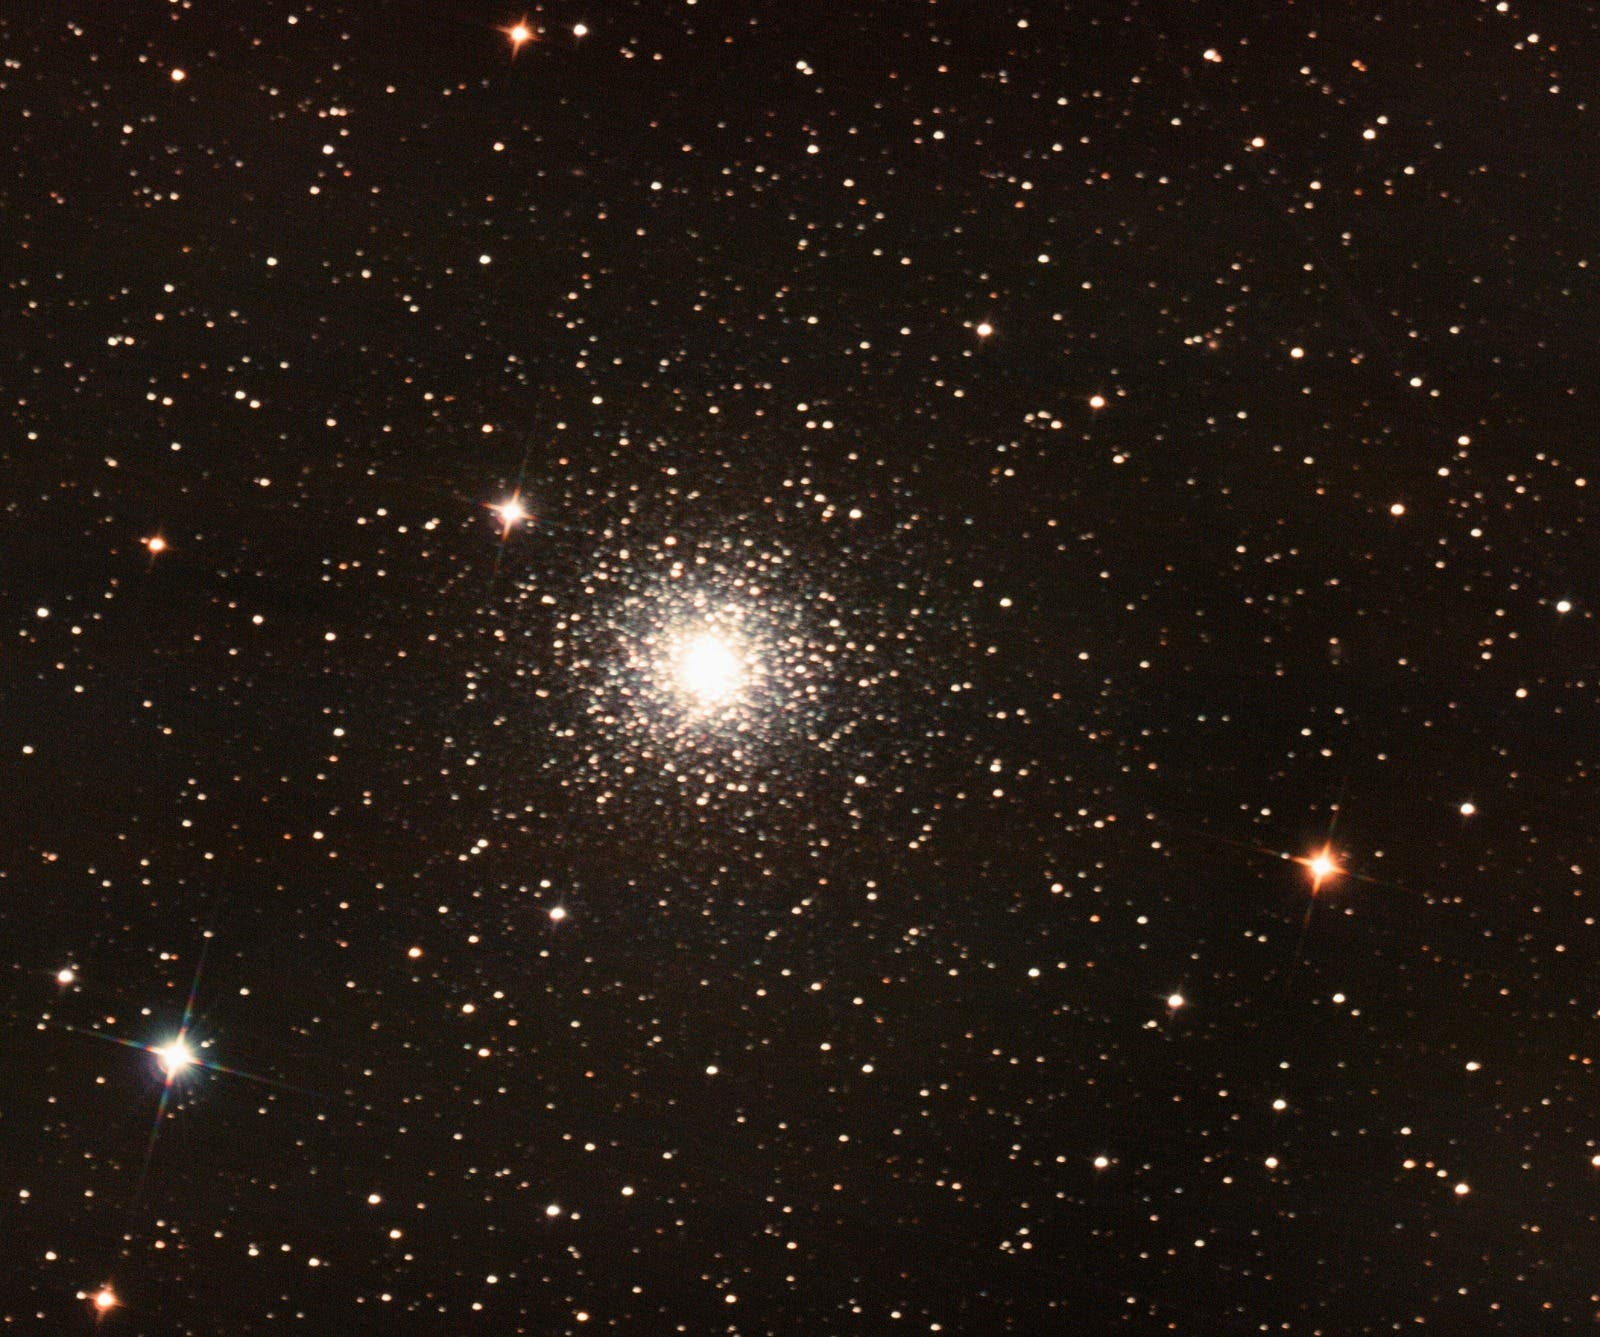 Kugelsternhaufen Messier 15